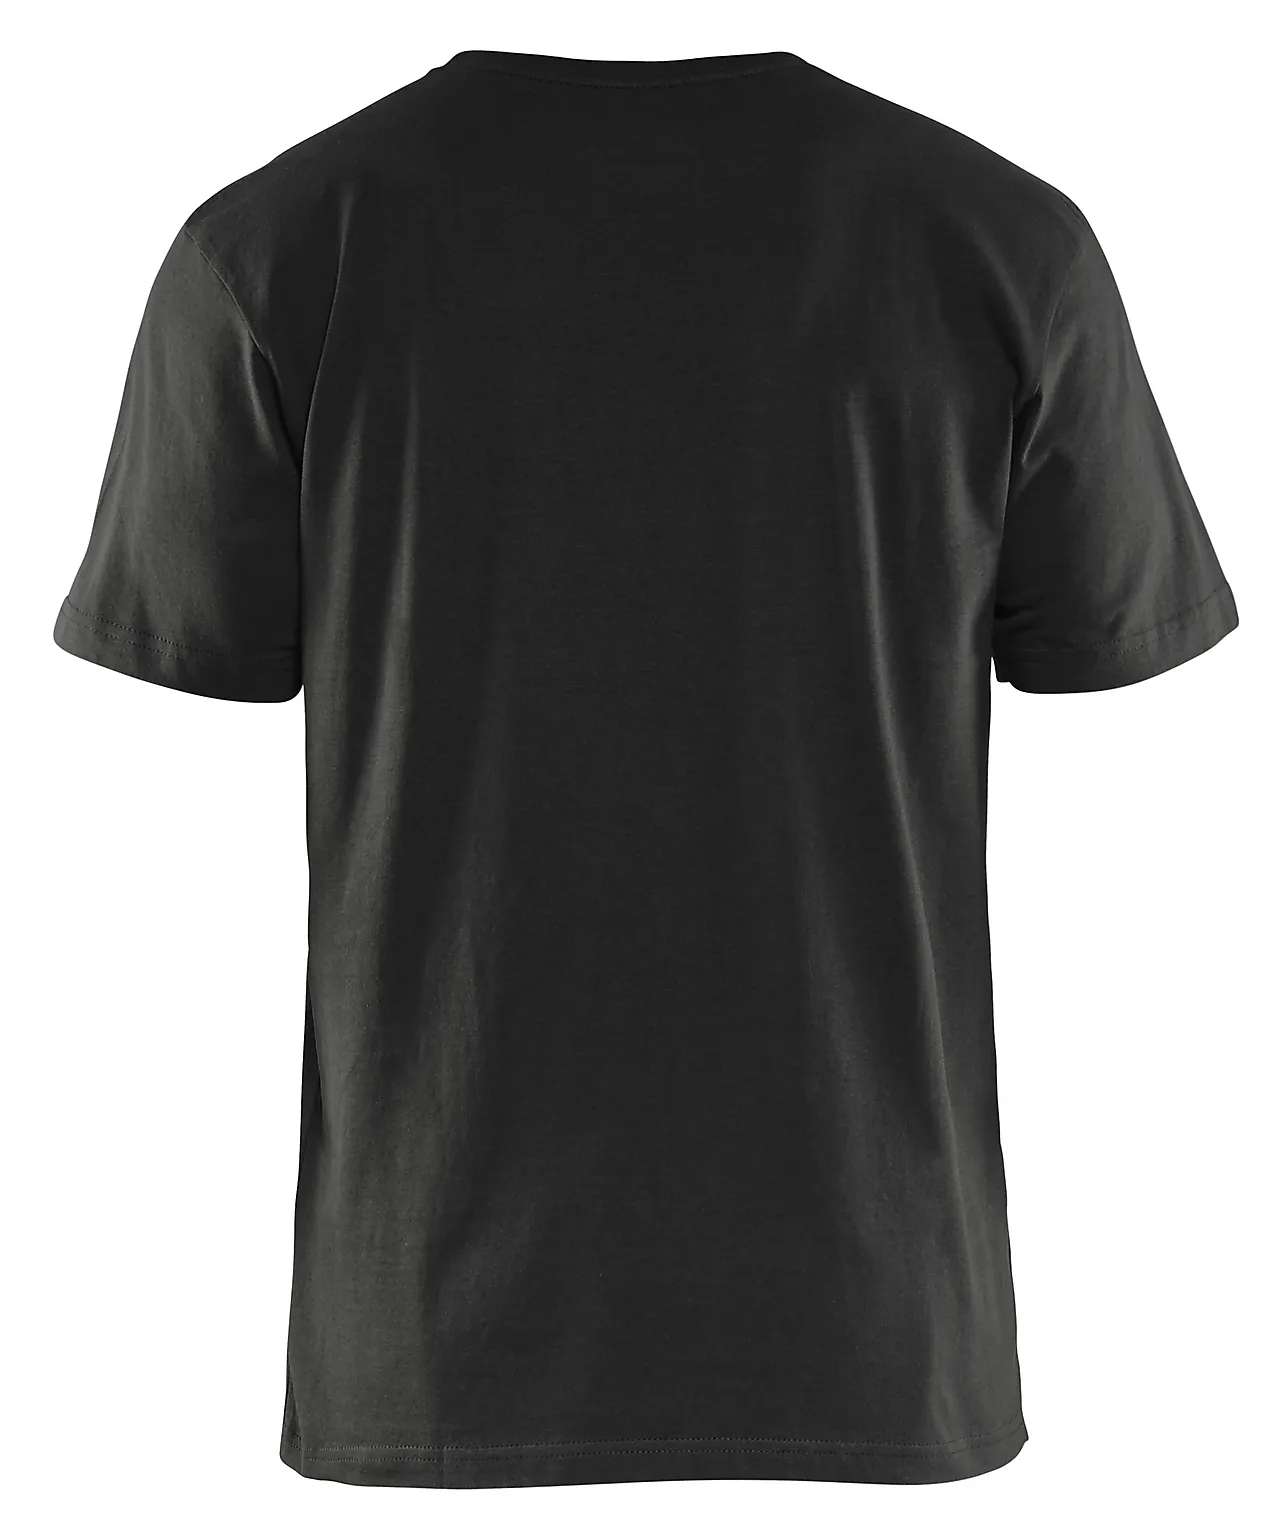 T-skjorte 5 pakk 332510429900m 5 pakk svart null - null - 3 - Miniatyr